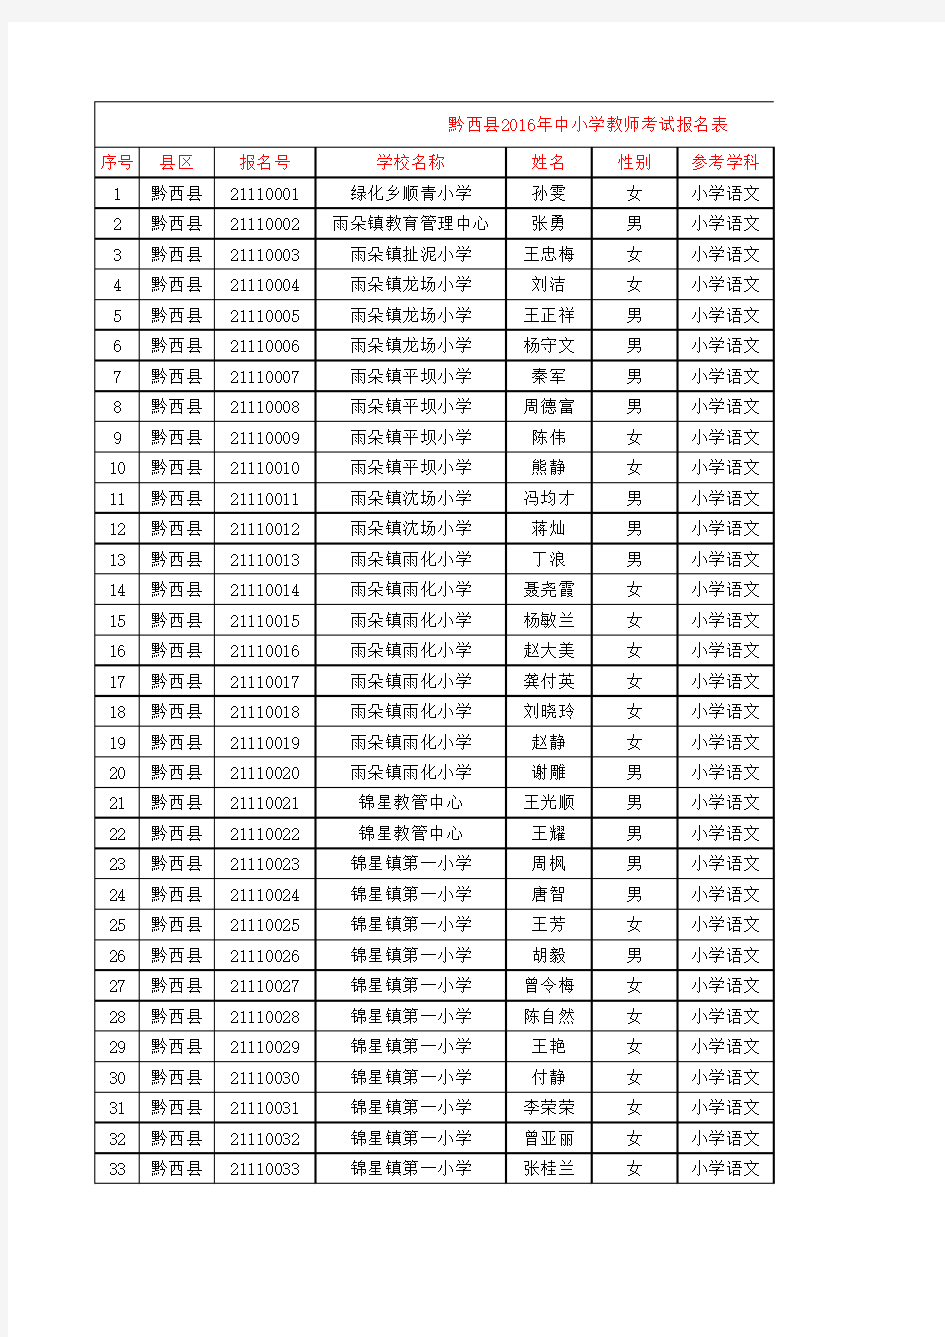 黔西县2016初中-小学教师考试报名表汇总统计(报名号)